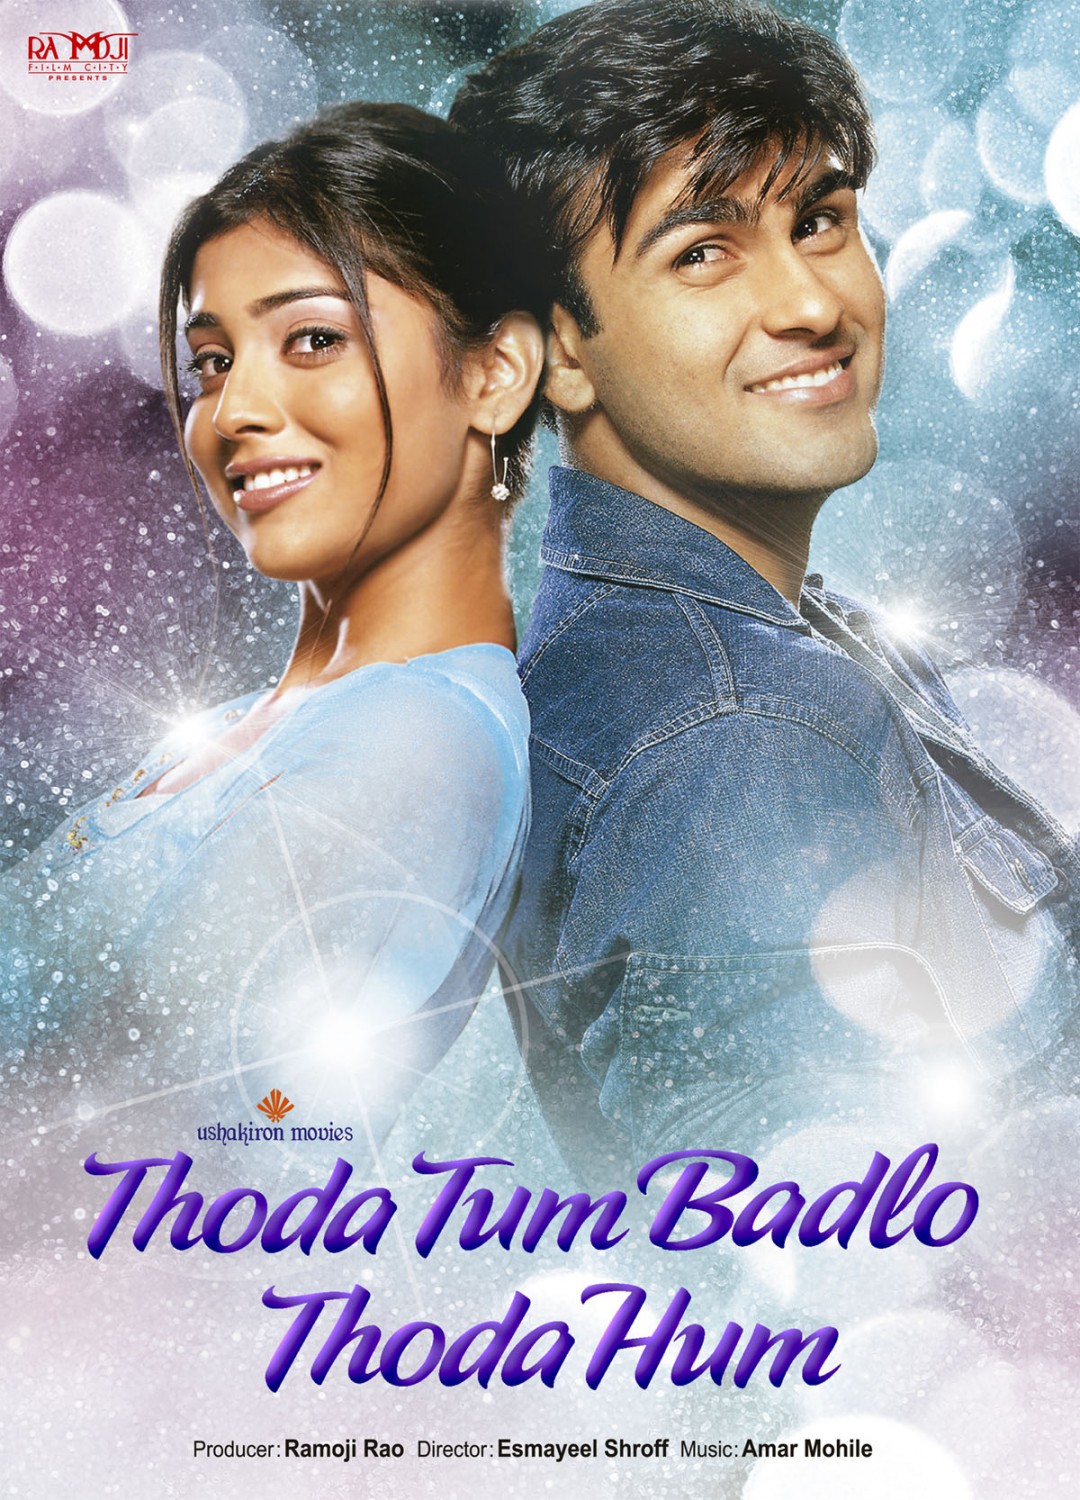 Extra Large Movie Poster Image for Thoda Tum Badlo Thoda Hum (#2 of 2)